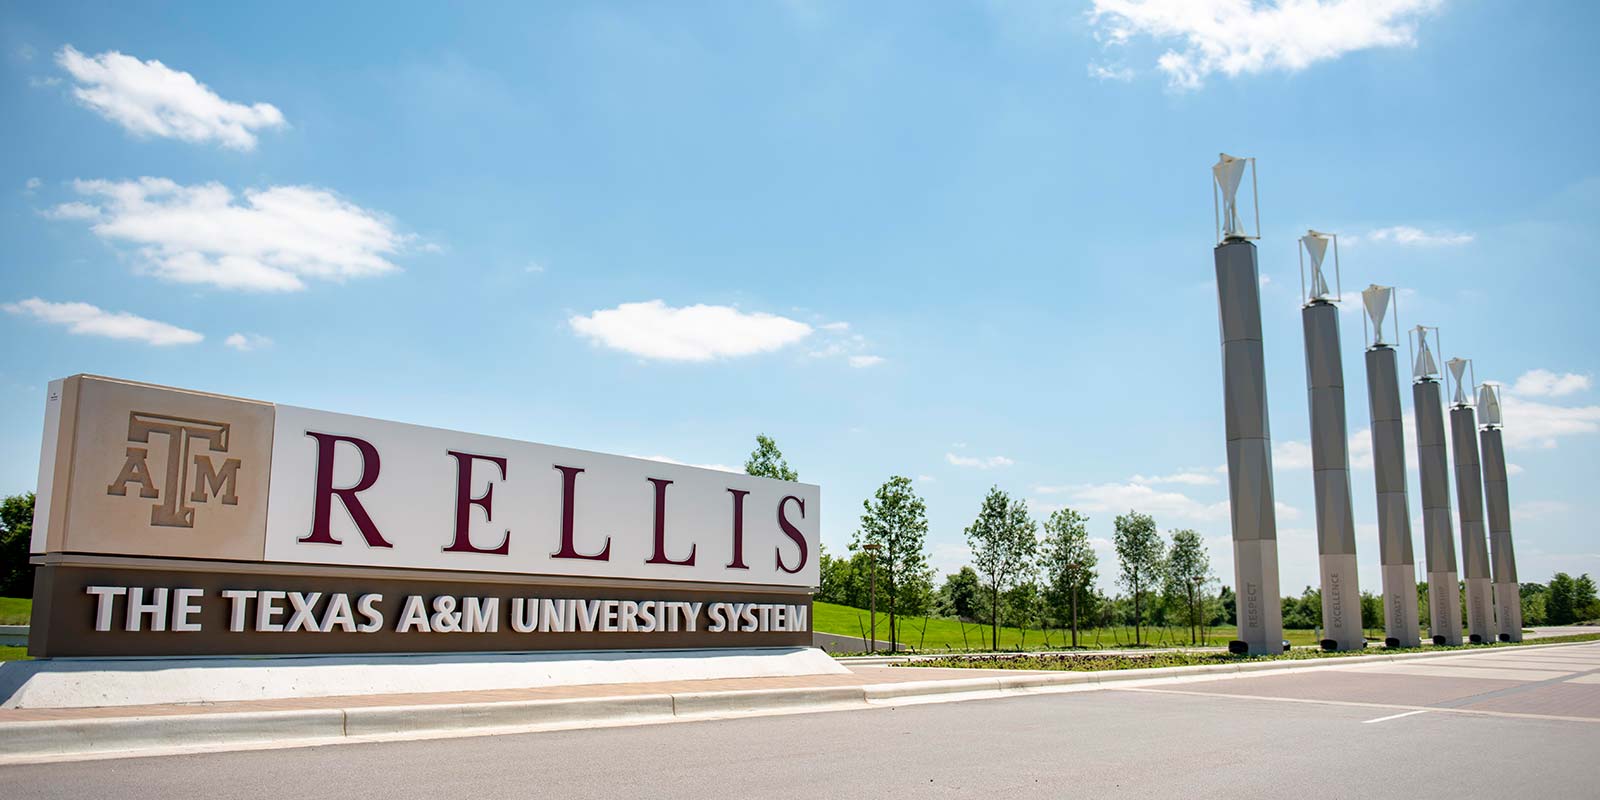 RELLIS campus entrance